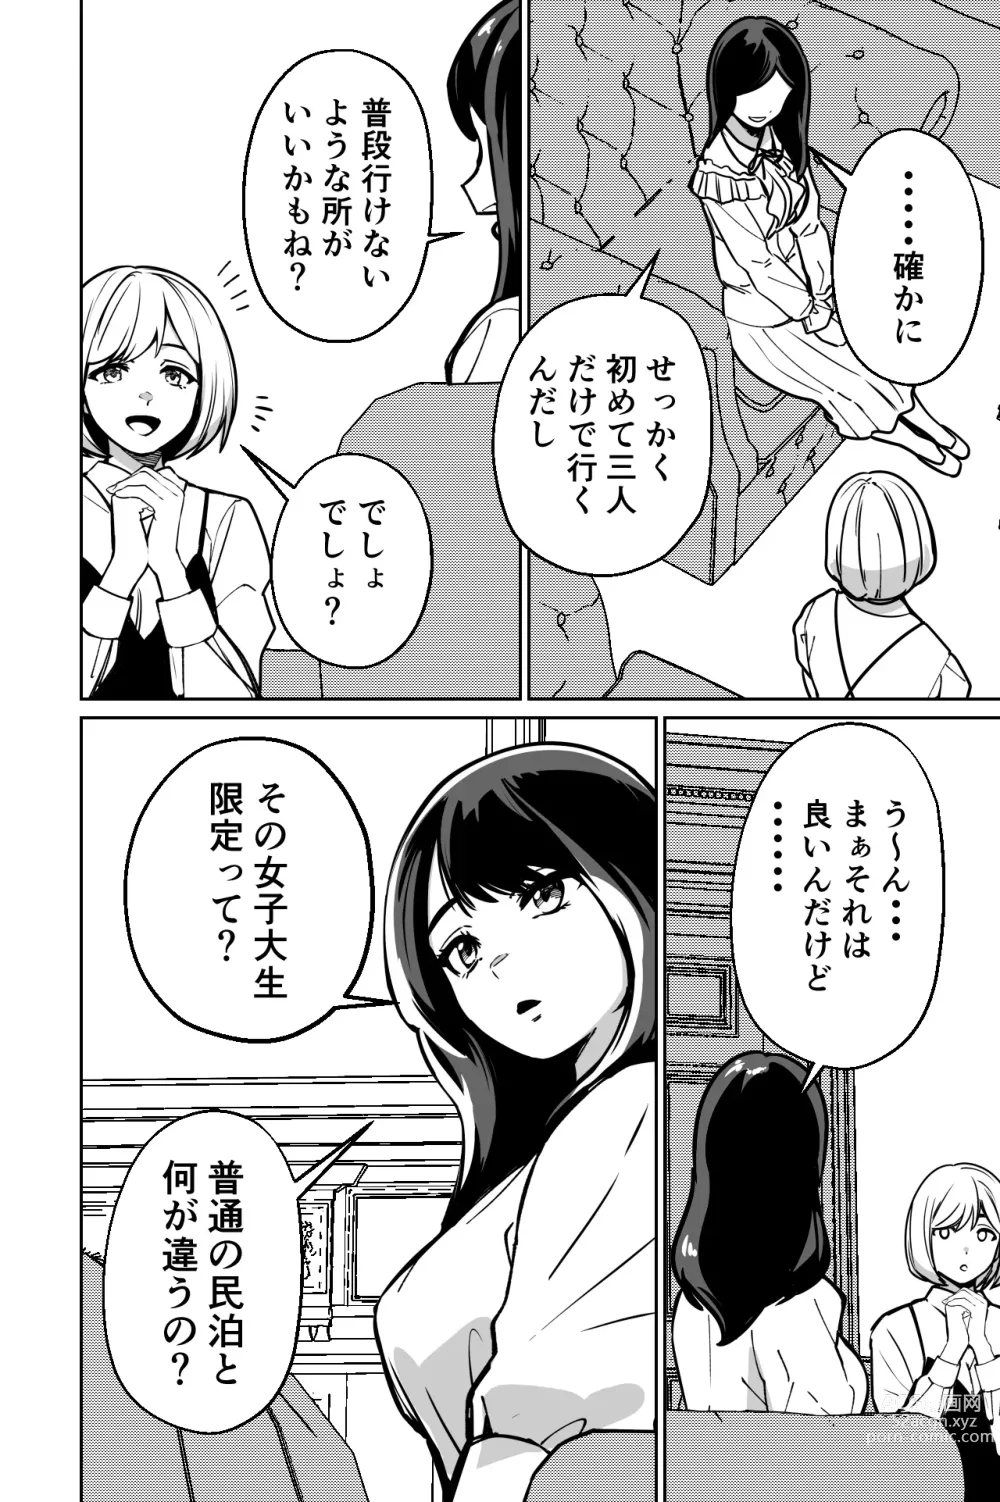 Page 6 of doujinshi Minpaku ~Ojou-sama-tachi wa Minpaku Keieisha no Wana ni Ochiru~